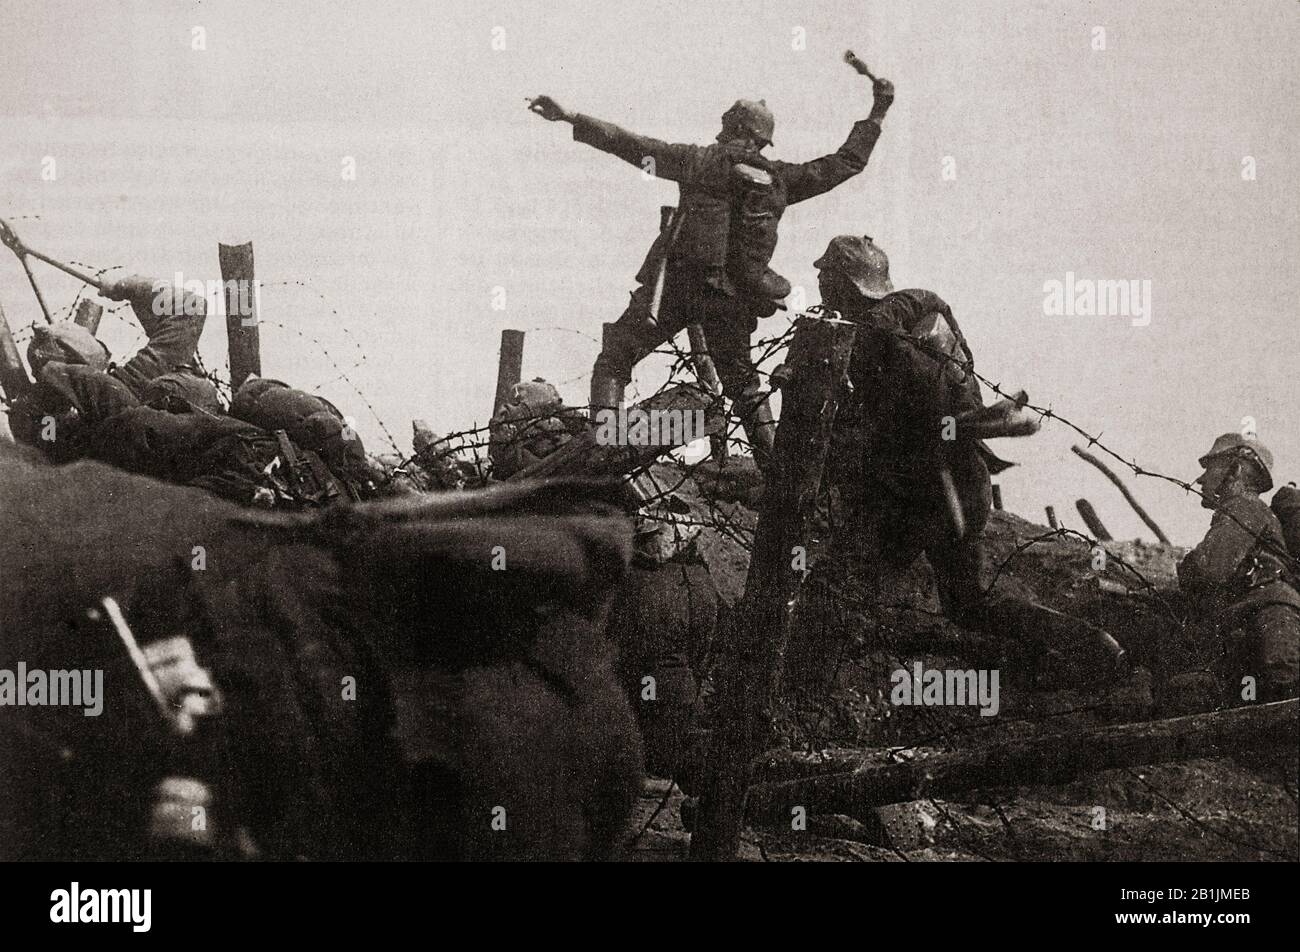 Un soldat français jette une grenade à main vers les lignes allemandes pendant la bataille de Verdun de 1916. La bataille a duré 302 jours, la plus longue et l'une des plus coûteuses de l'histoire humaine au cours de laquelle les Français ont subi 377,231 victimes et les Allemands 337,000, soit un total de 714,231. En France, la bataille est venue symboliser la détermination de l'armée française et le caractère destructeur de la guerre. Banque D'Images